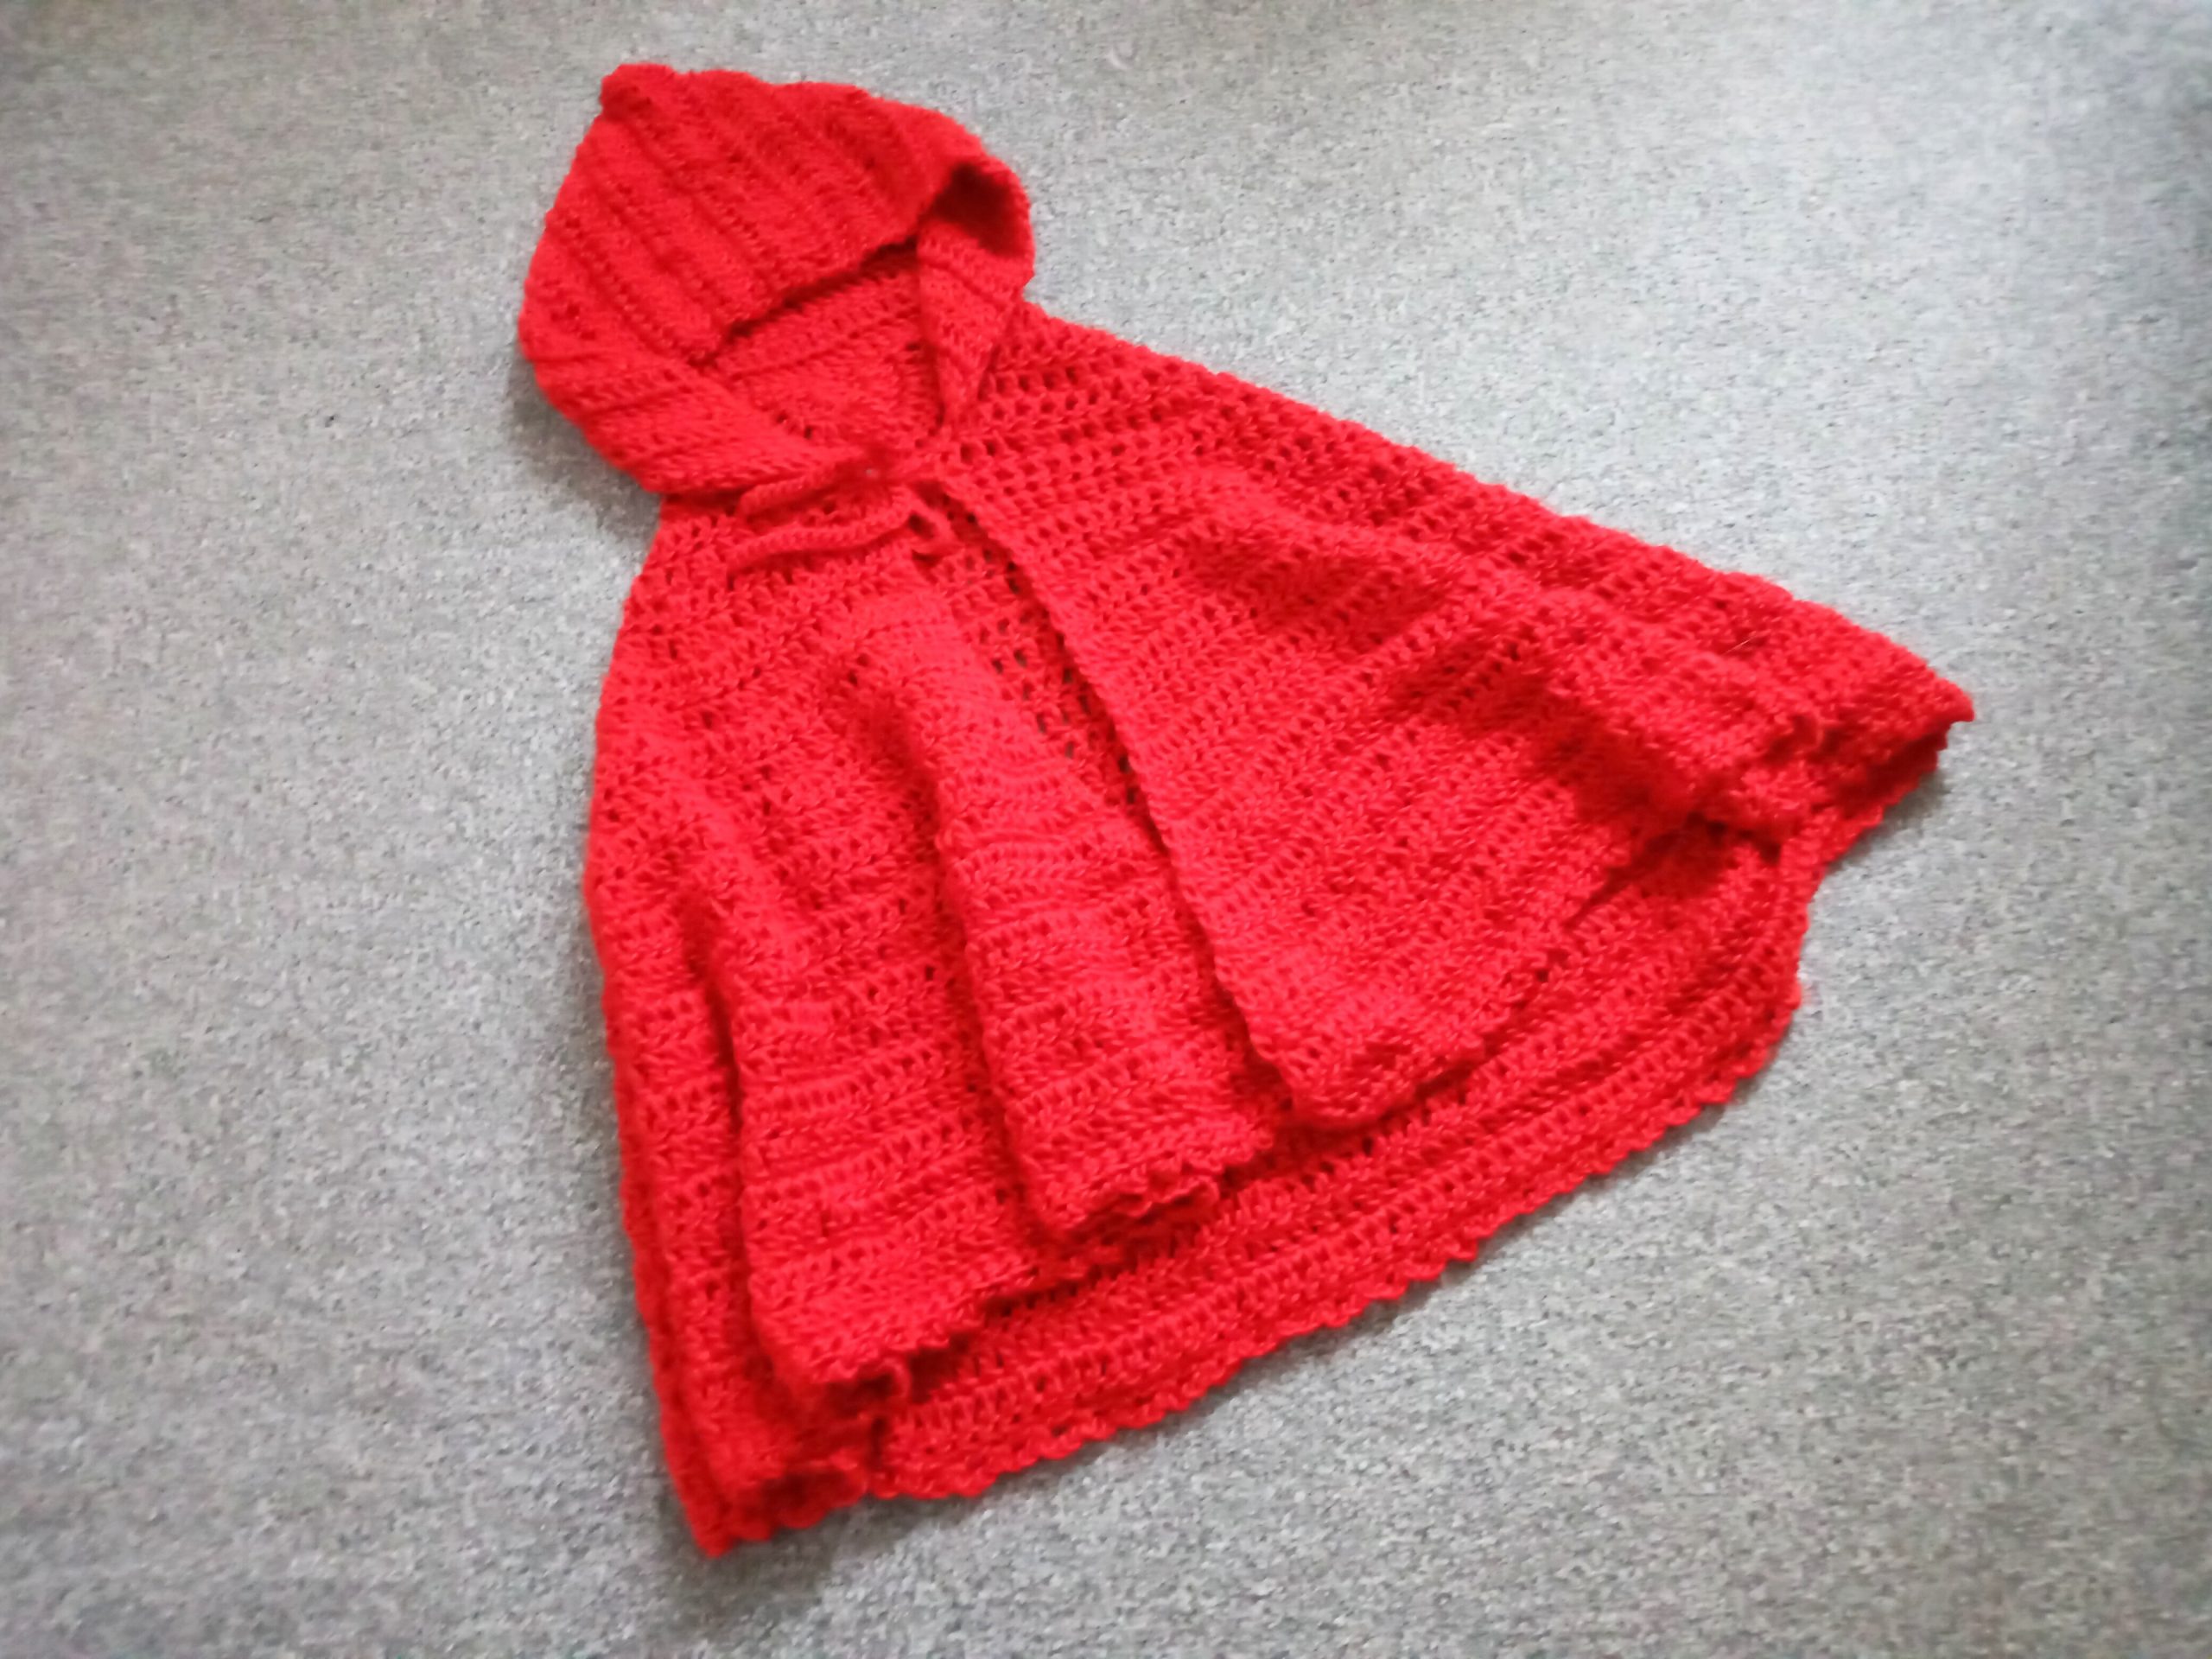 Crochet The Scarlet Hooded Shawl Pattern